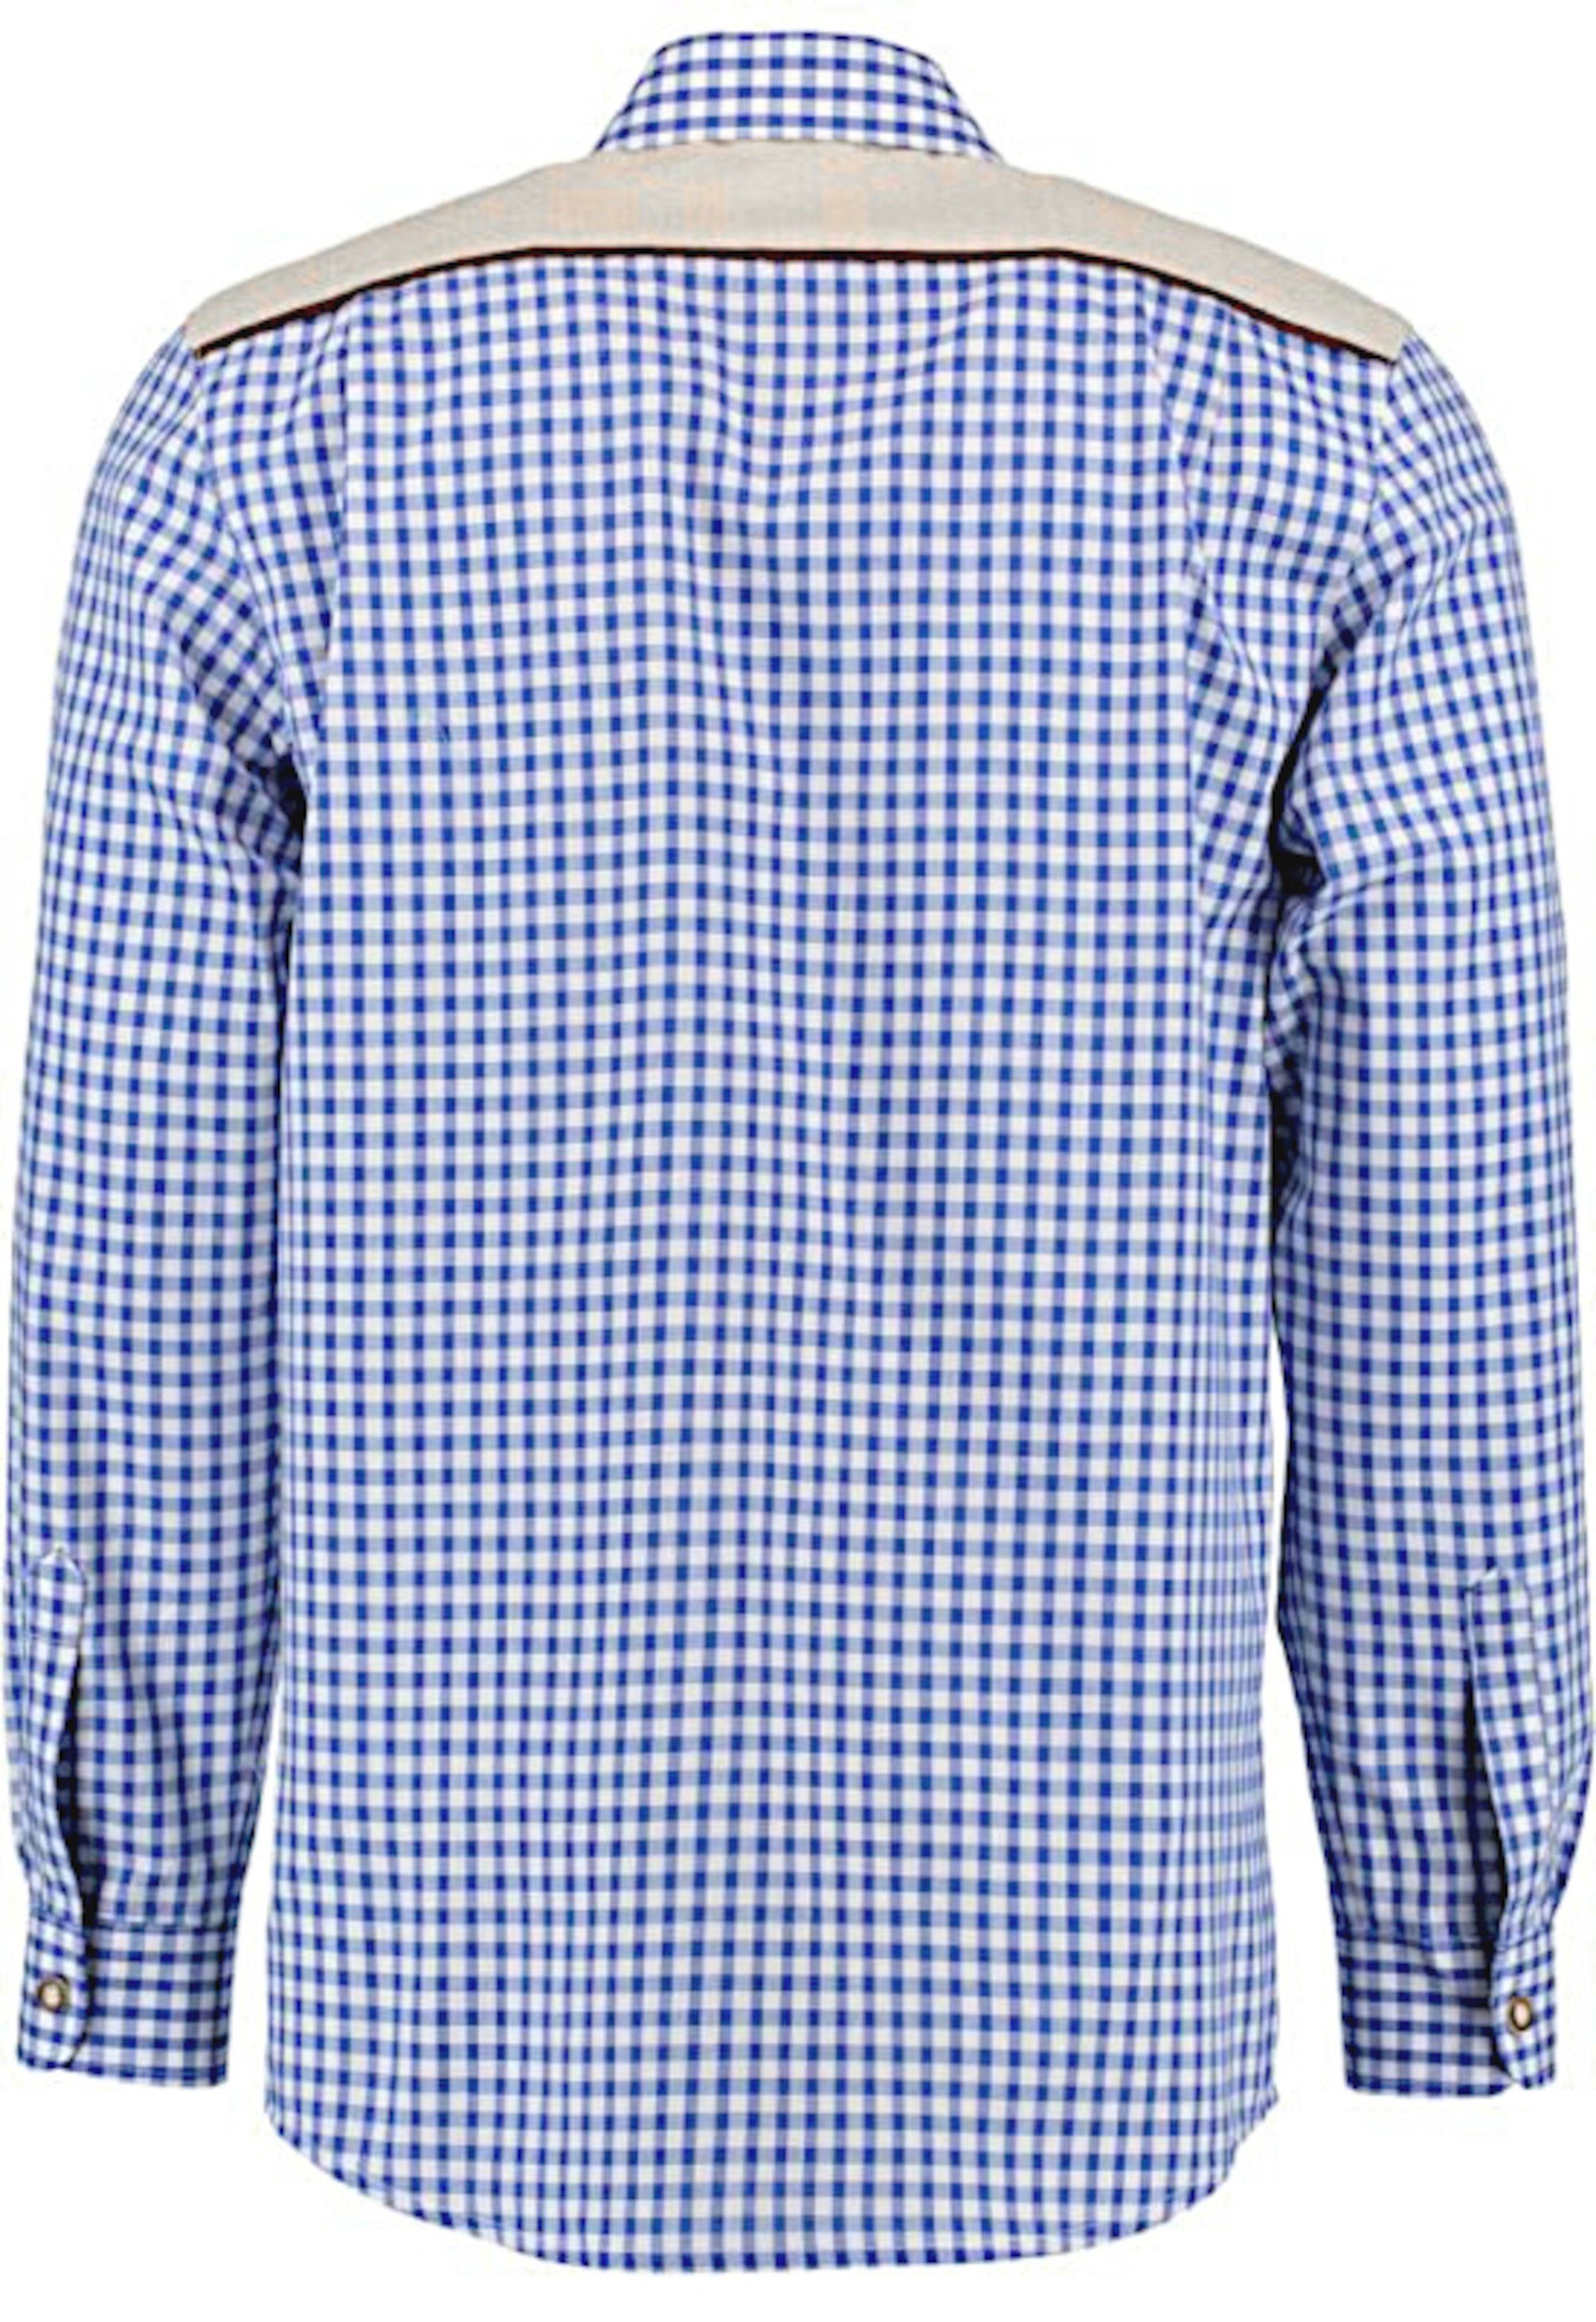 Trachtenhemd TH-0215 blau-weiß Krempelarm Kentkragen, Stickerei orbis gerader Fit-bequemer Regular Schnitt